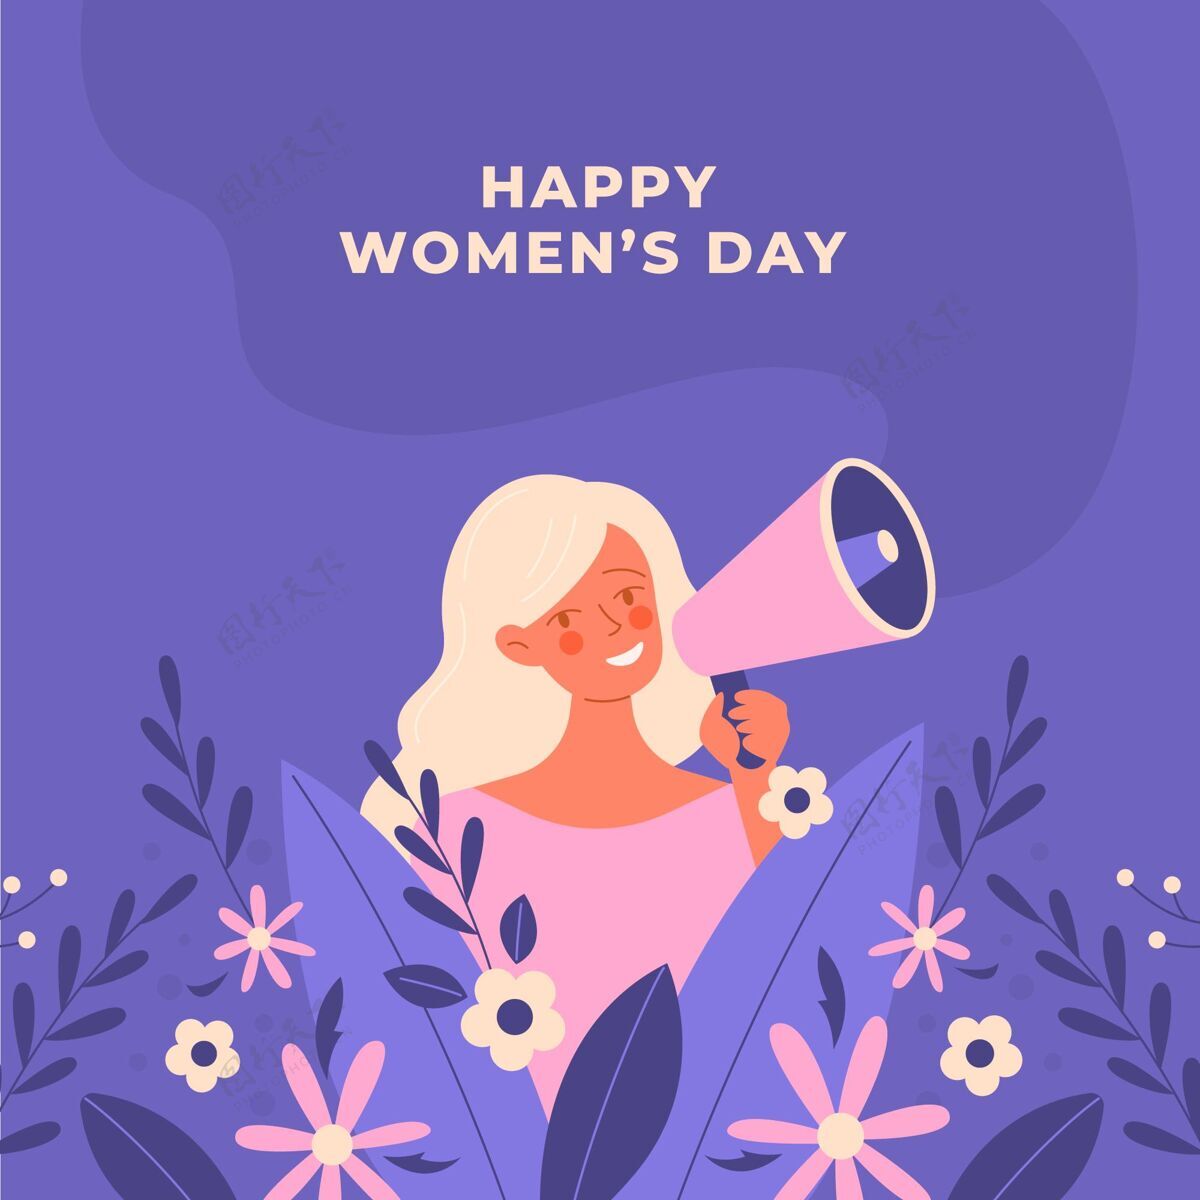 两性平等手绘国际妇女节插画活动妇女权利女性